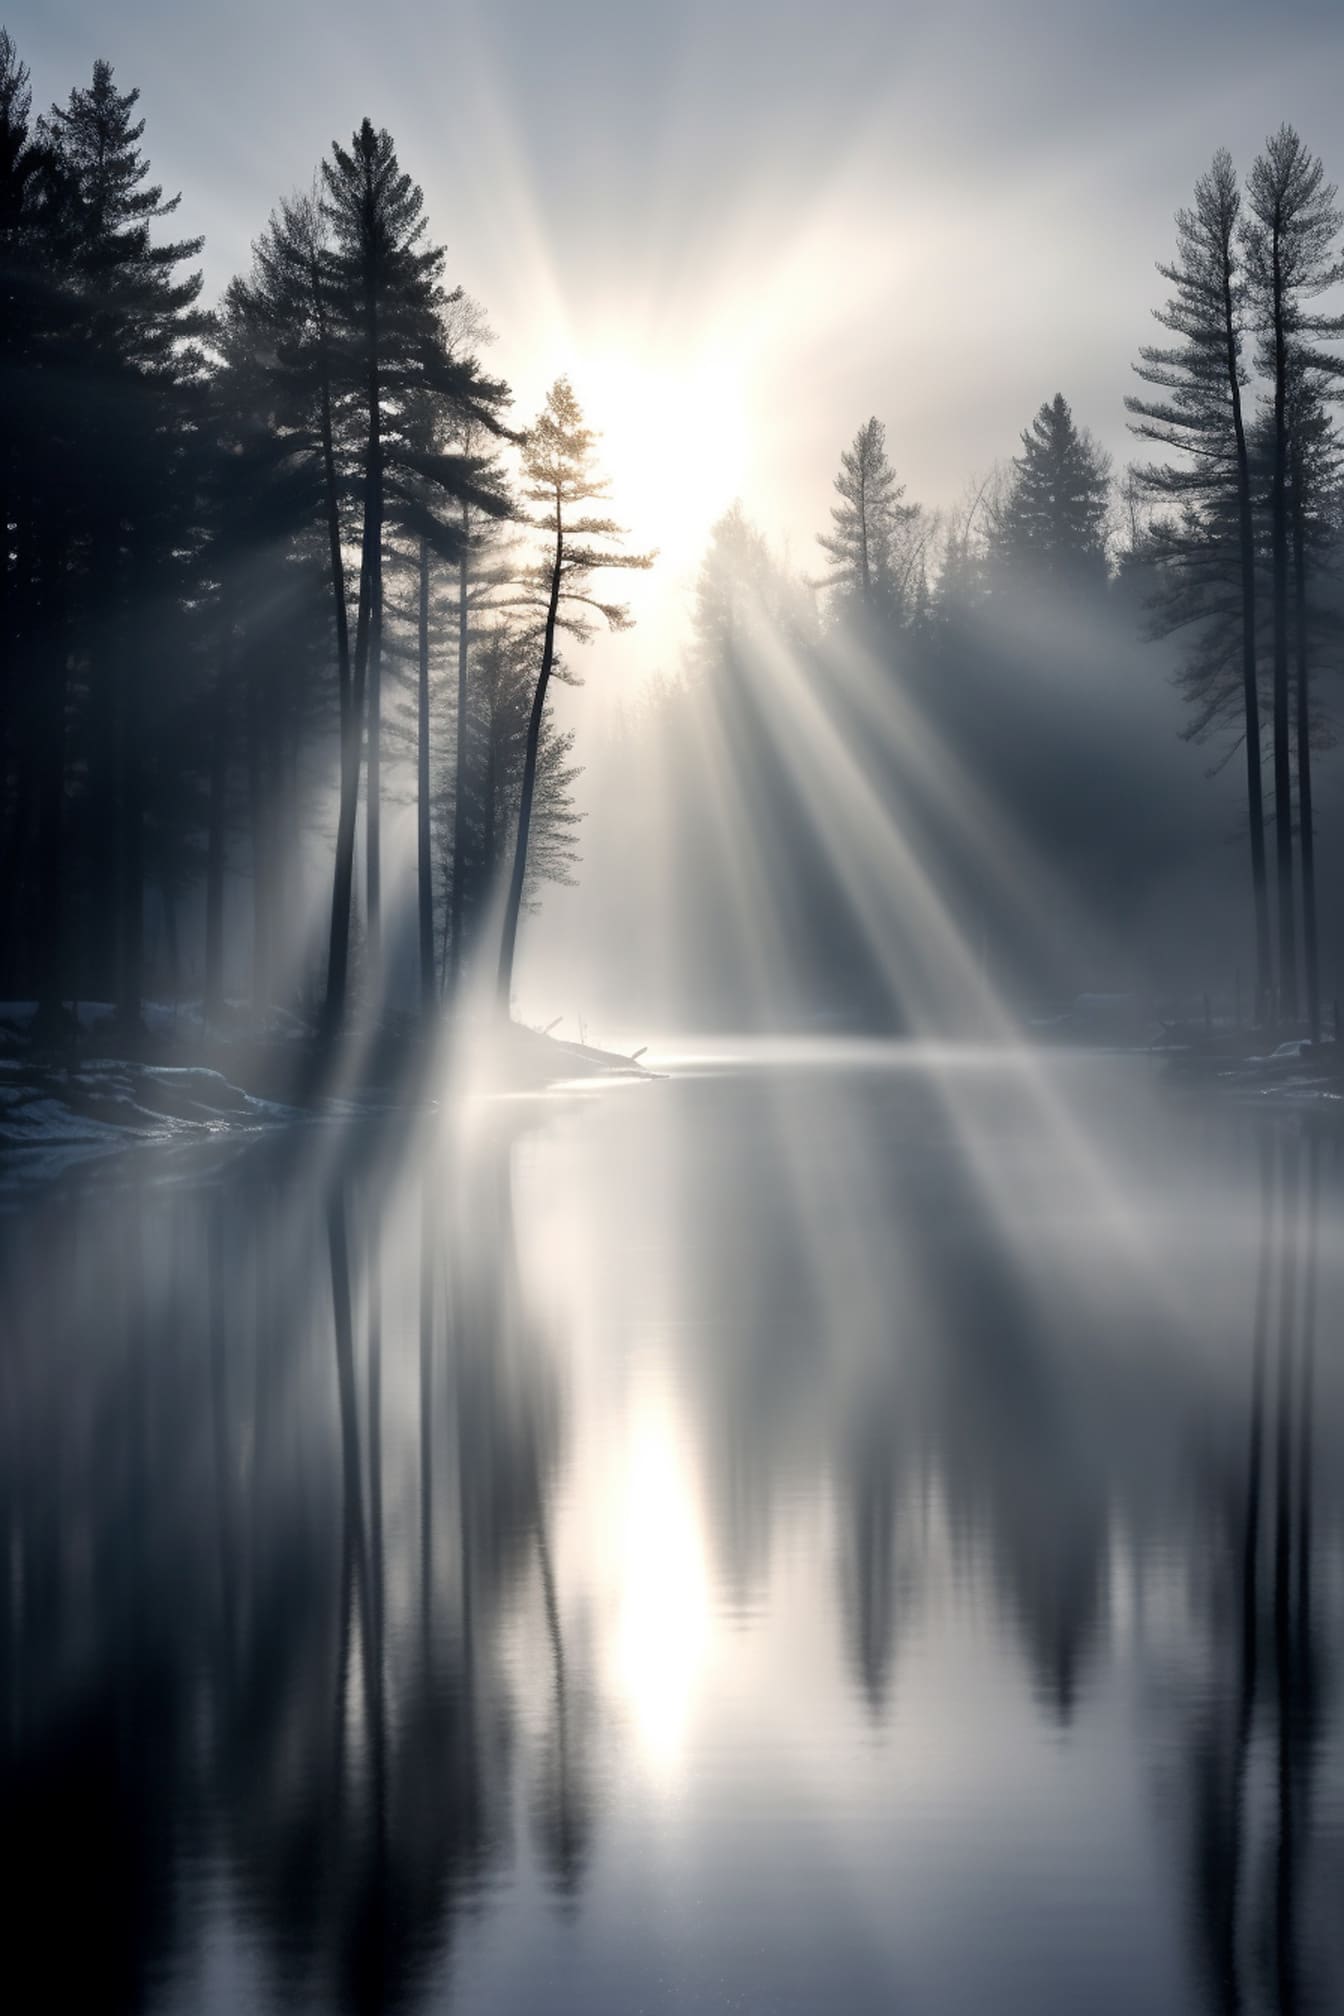 Mgliste jezioro z rozmytymi promieniami słonecznymi ilustracja graficzna